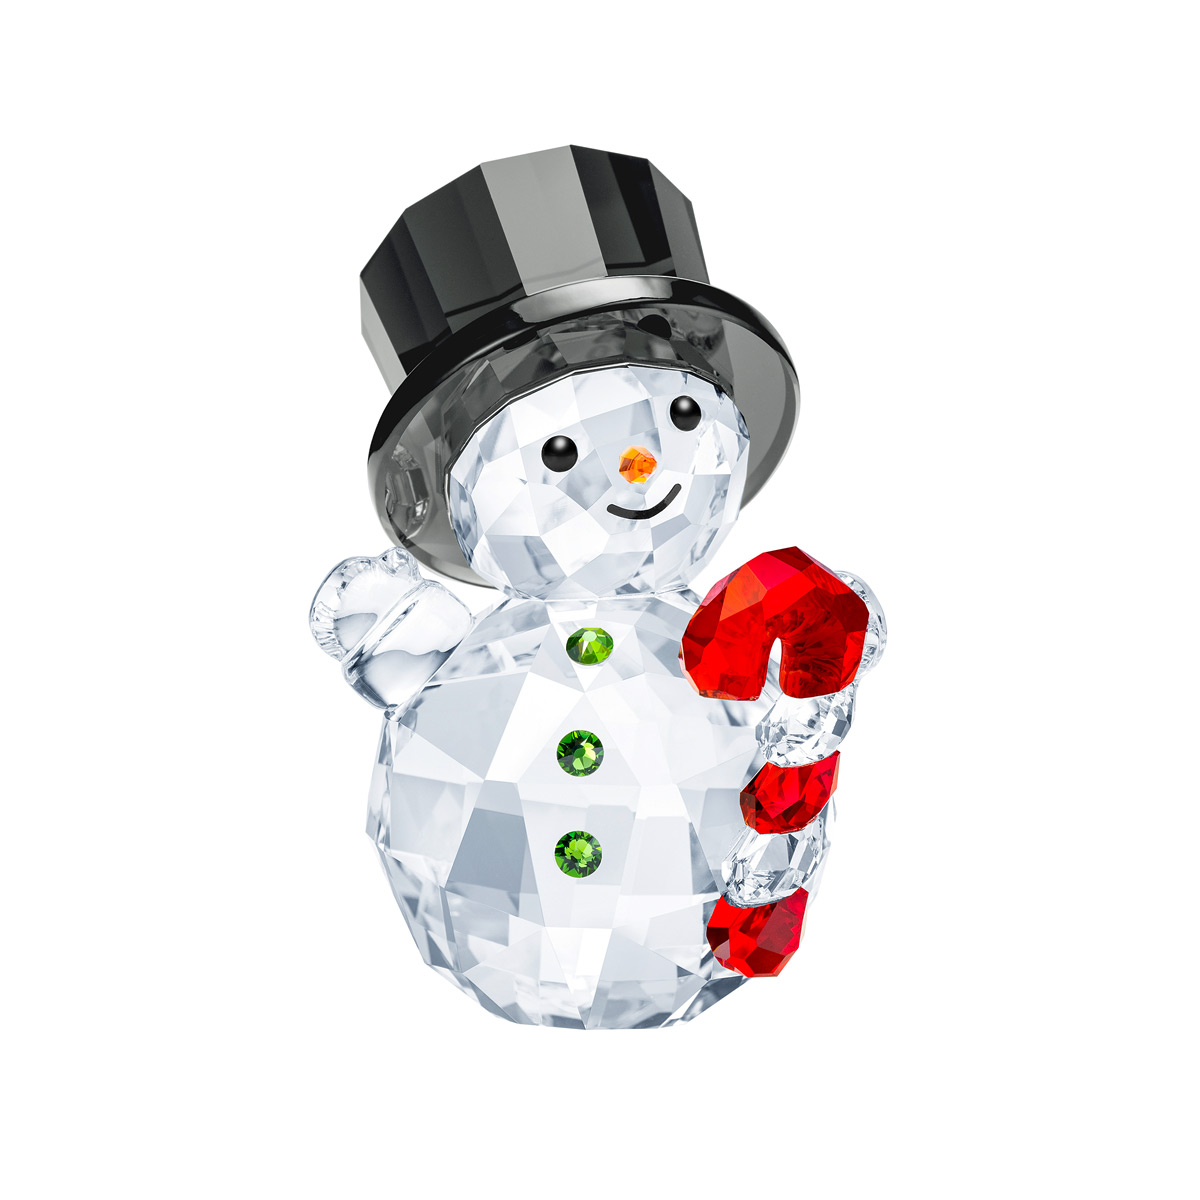 Swarovski Snowman with Candy Cane